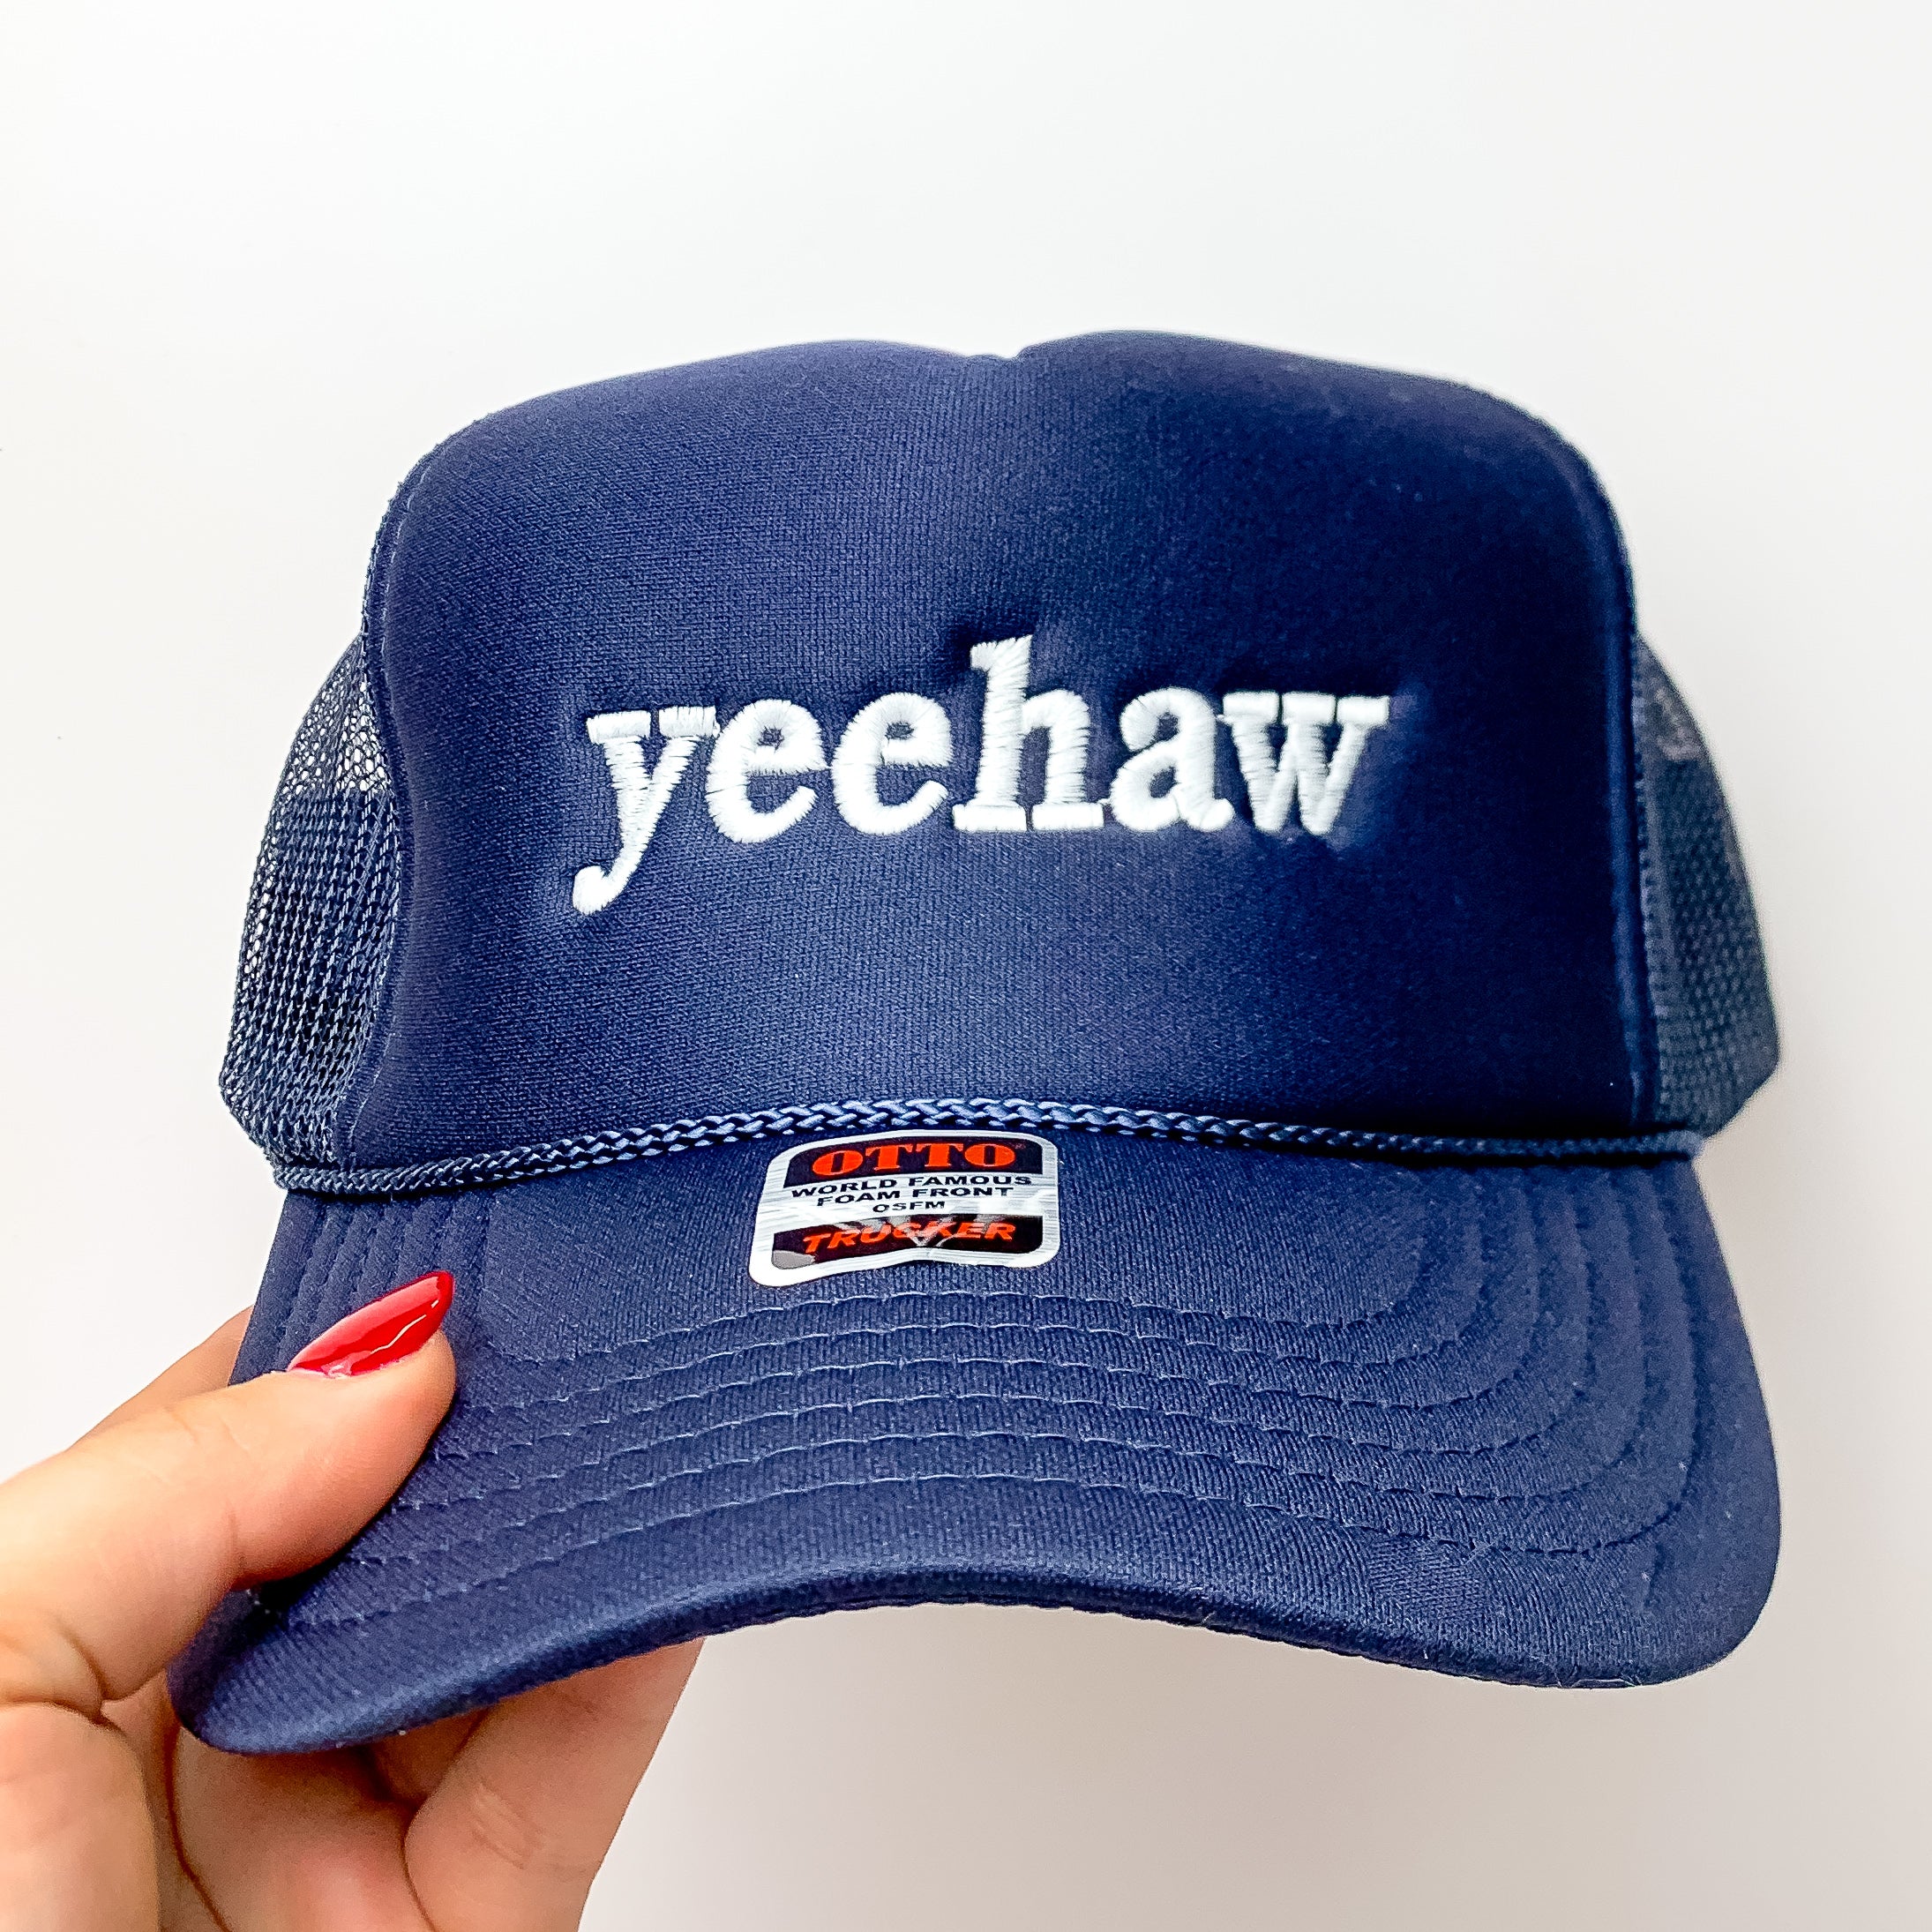 Yeehaw Foam Trucker Hat in Blue and White